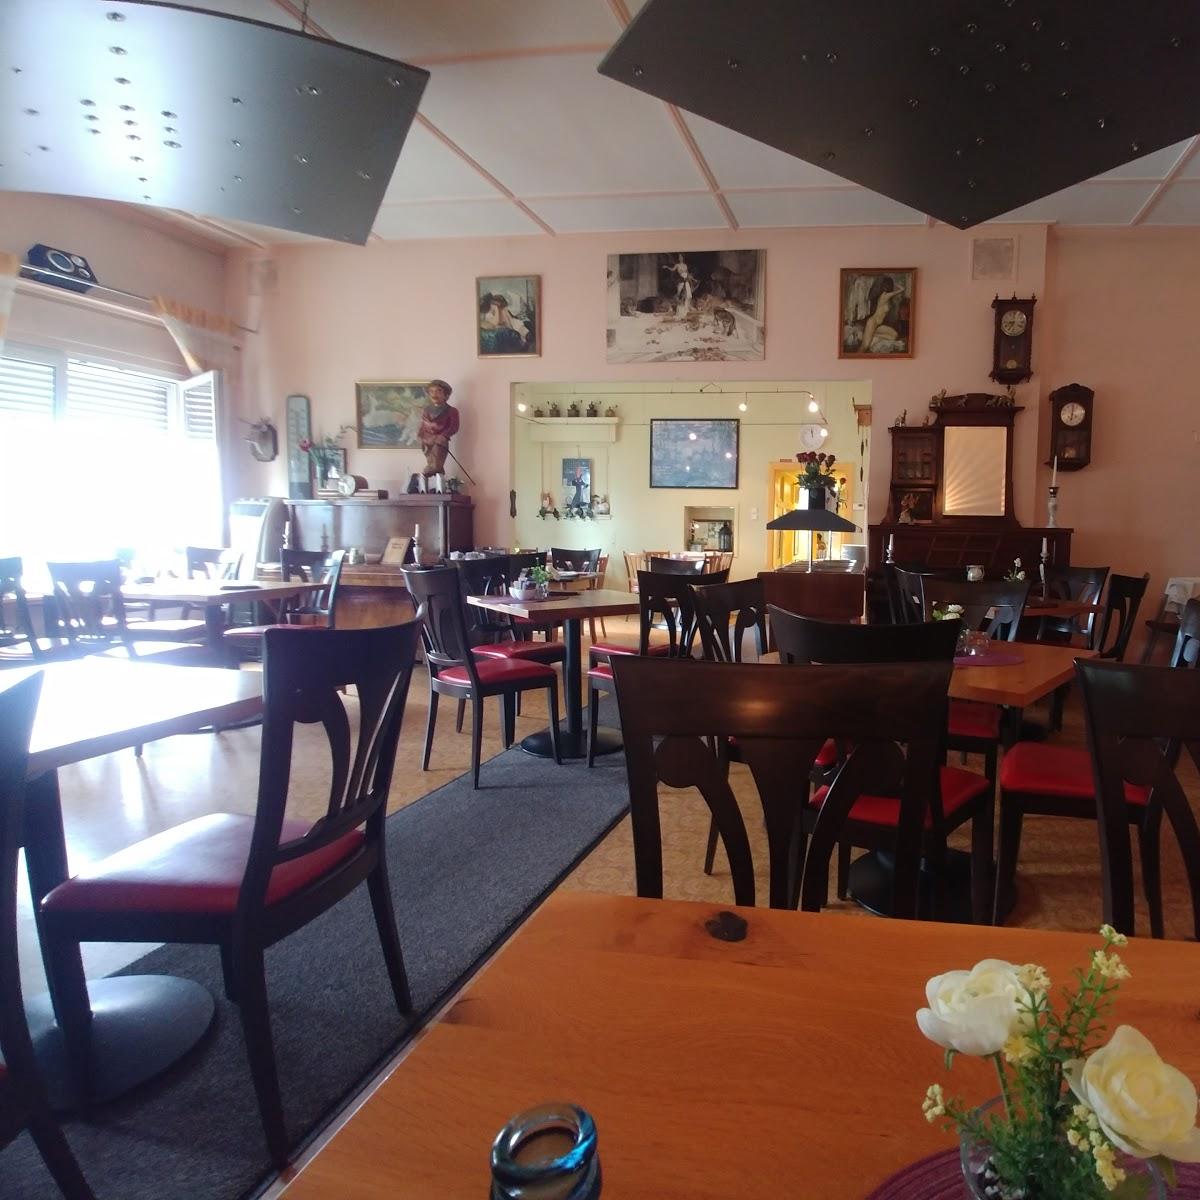 Restaurant "Park-Café" in Sandhausen